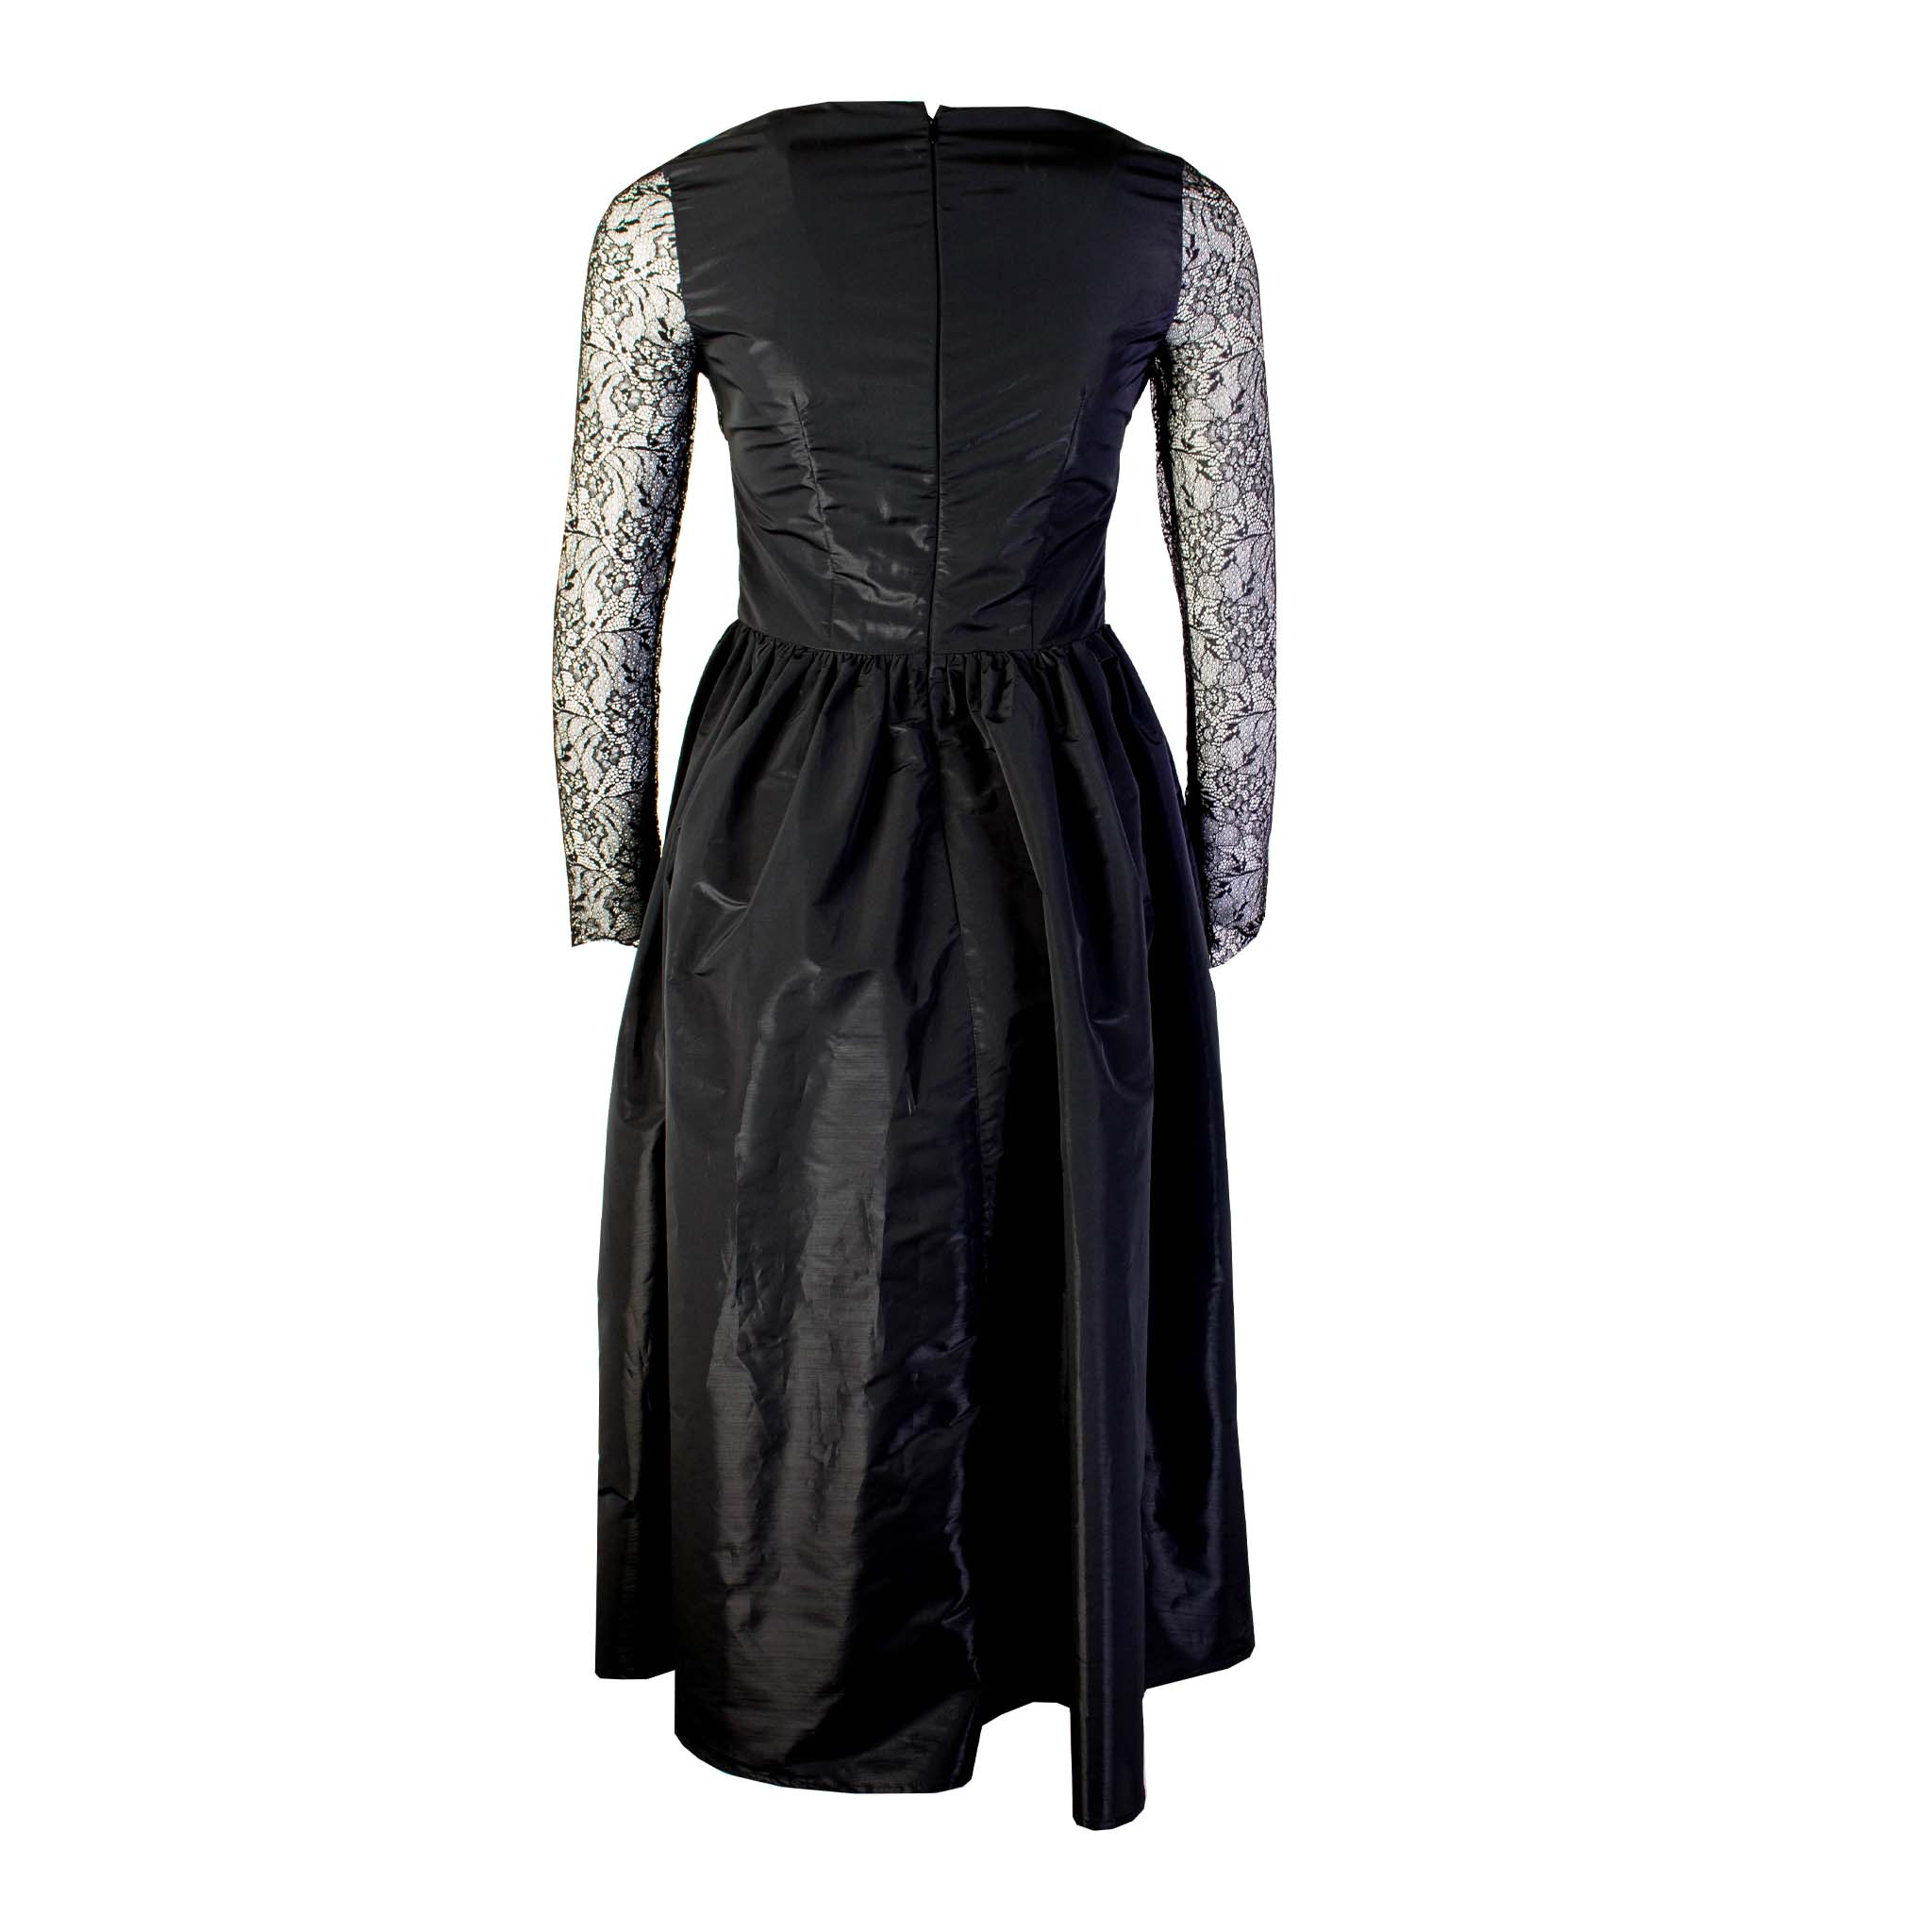 Lardini Black Long Dress with Lace details - Fizigo